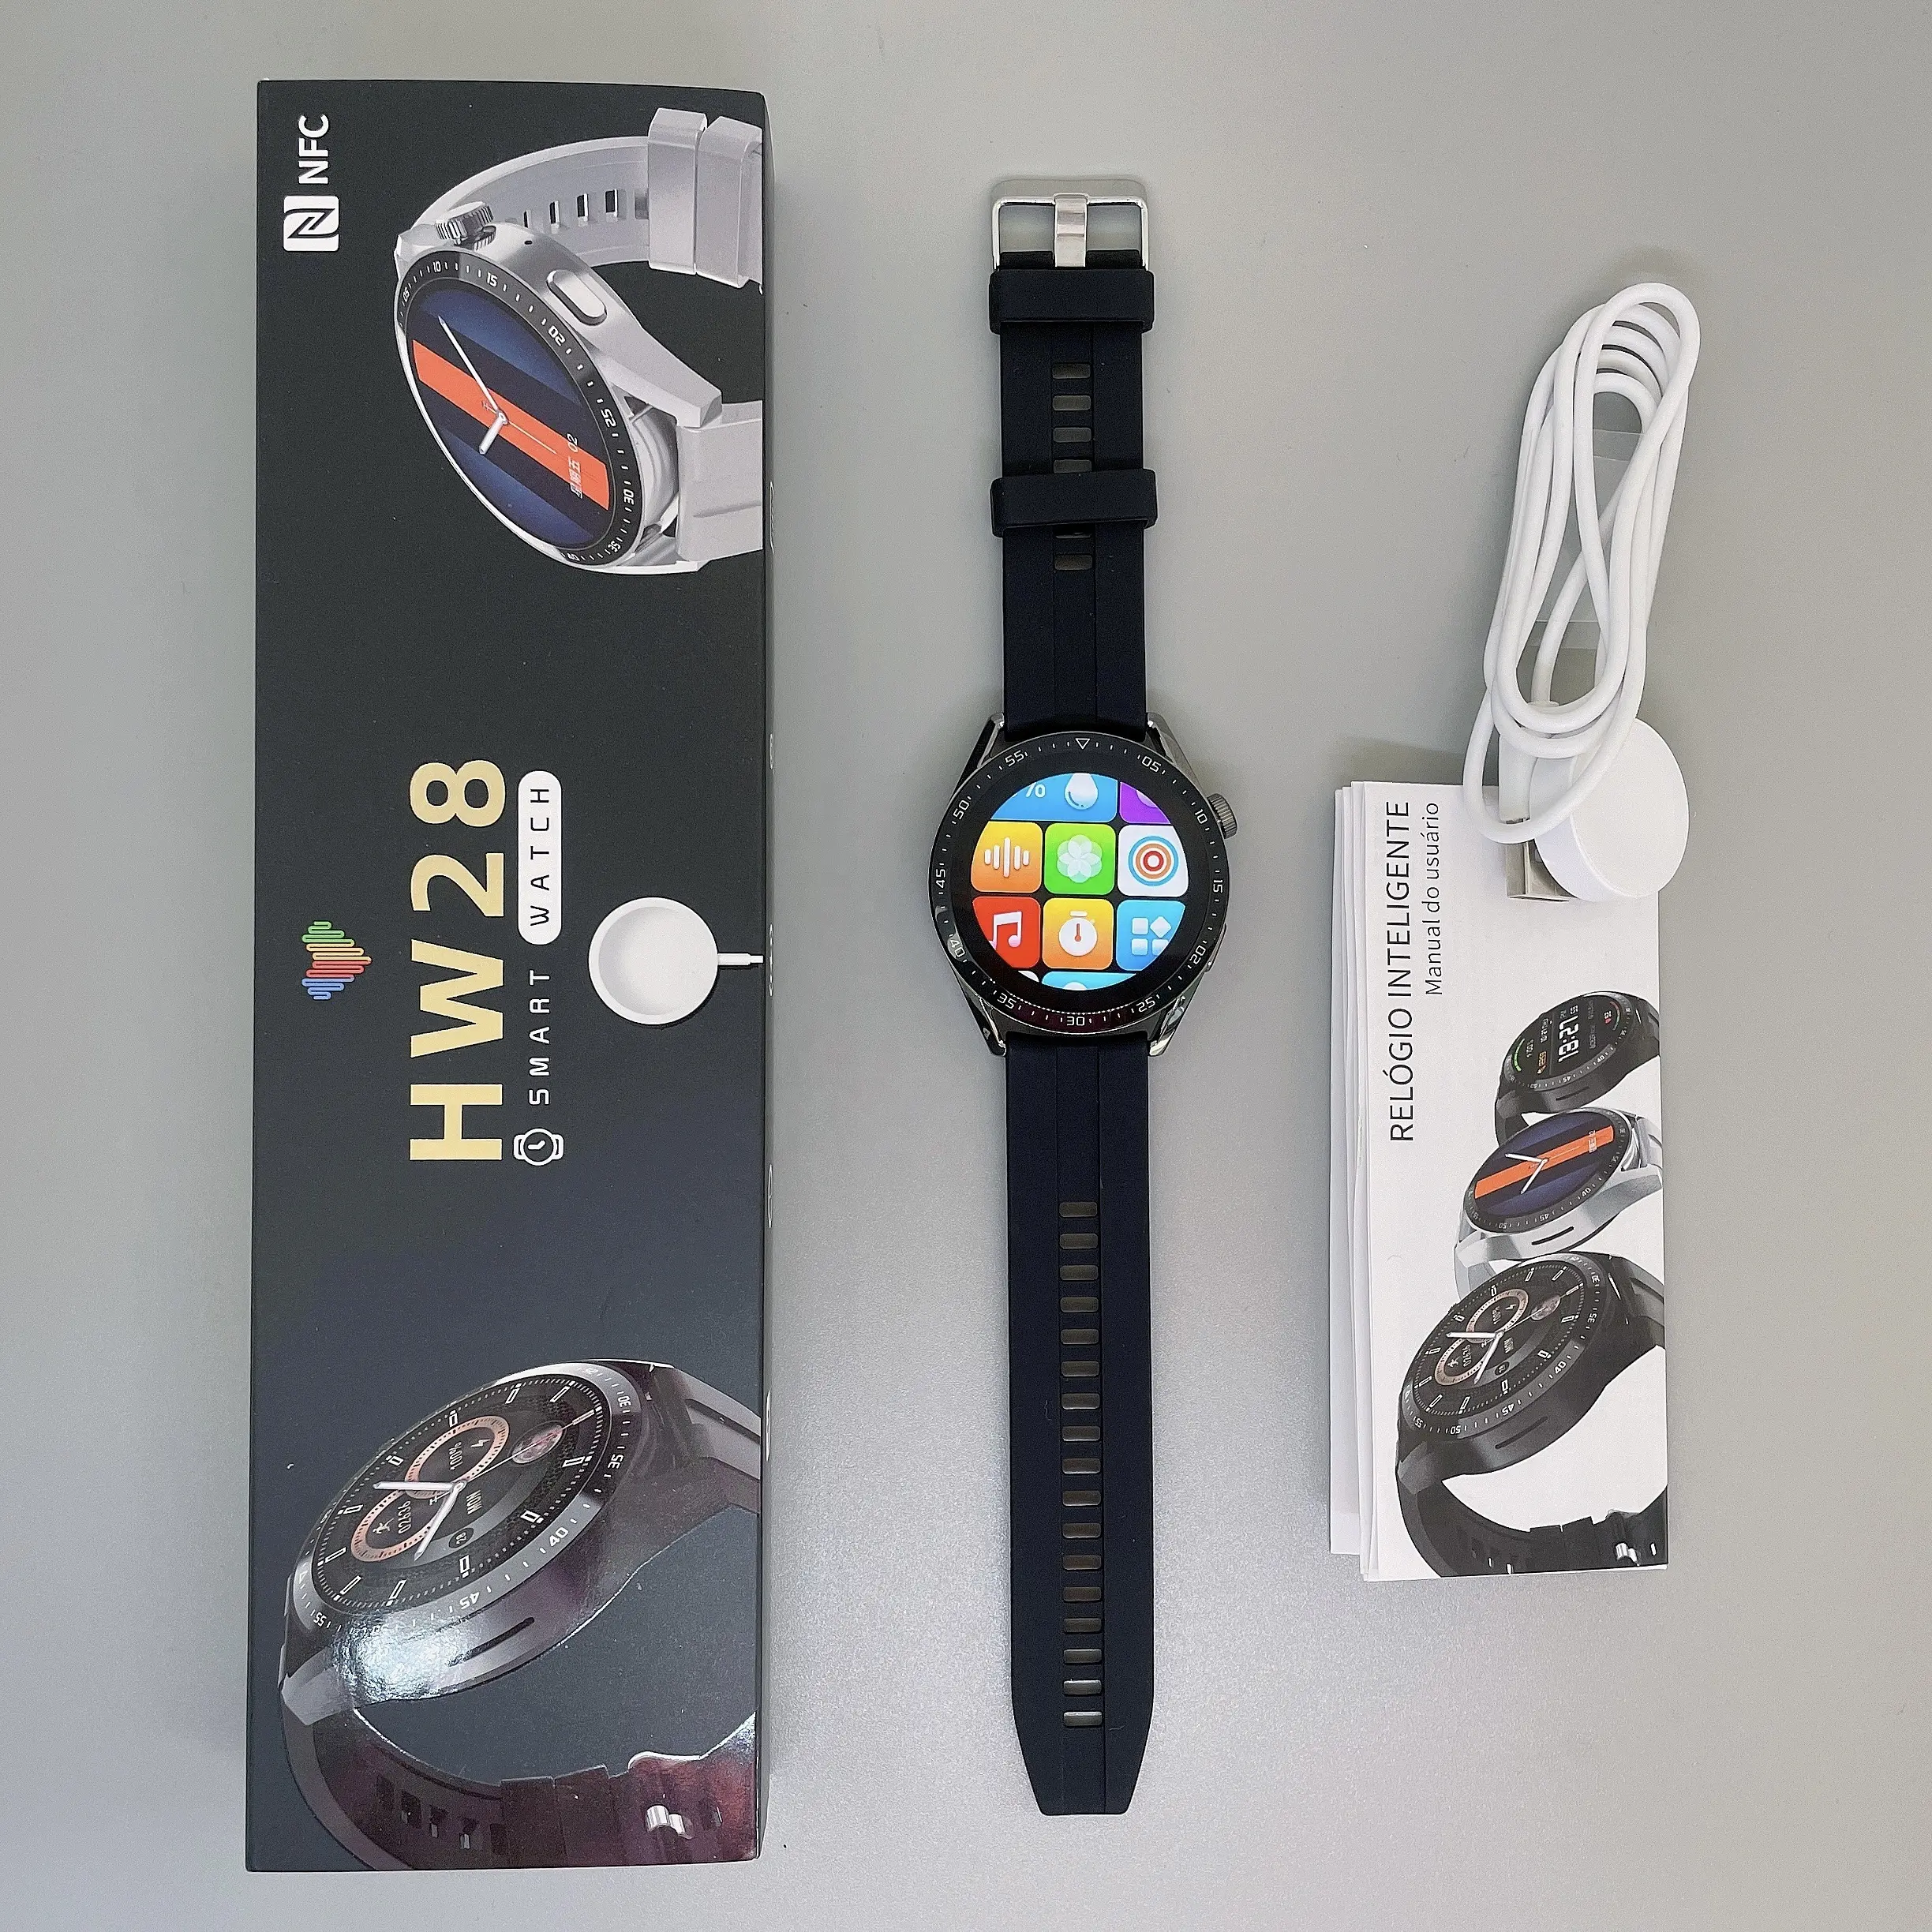 Smart Horloge Hw28 Nfc Offline Betaling Locatie Delen Smart Wearable Horloge Electronics Mannen Vrouwen Dragen Voor Ios Android Telefoon